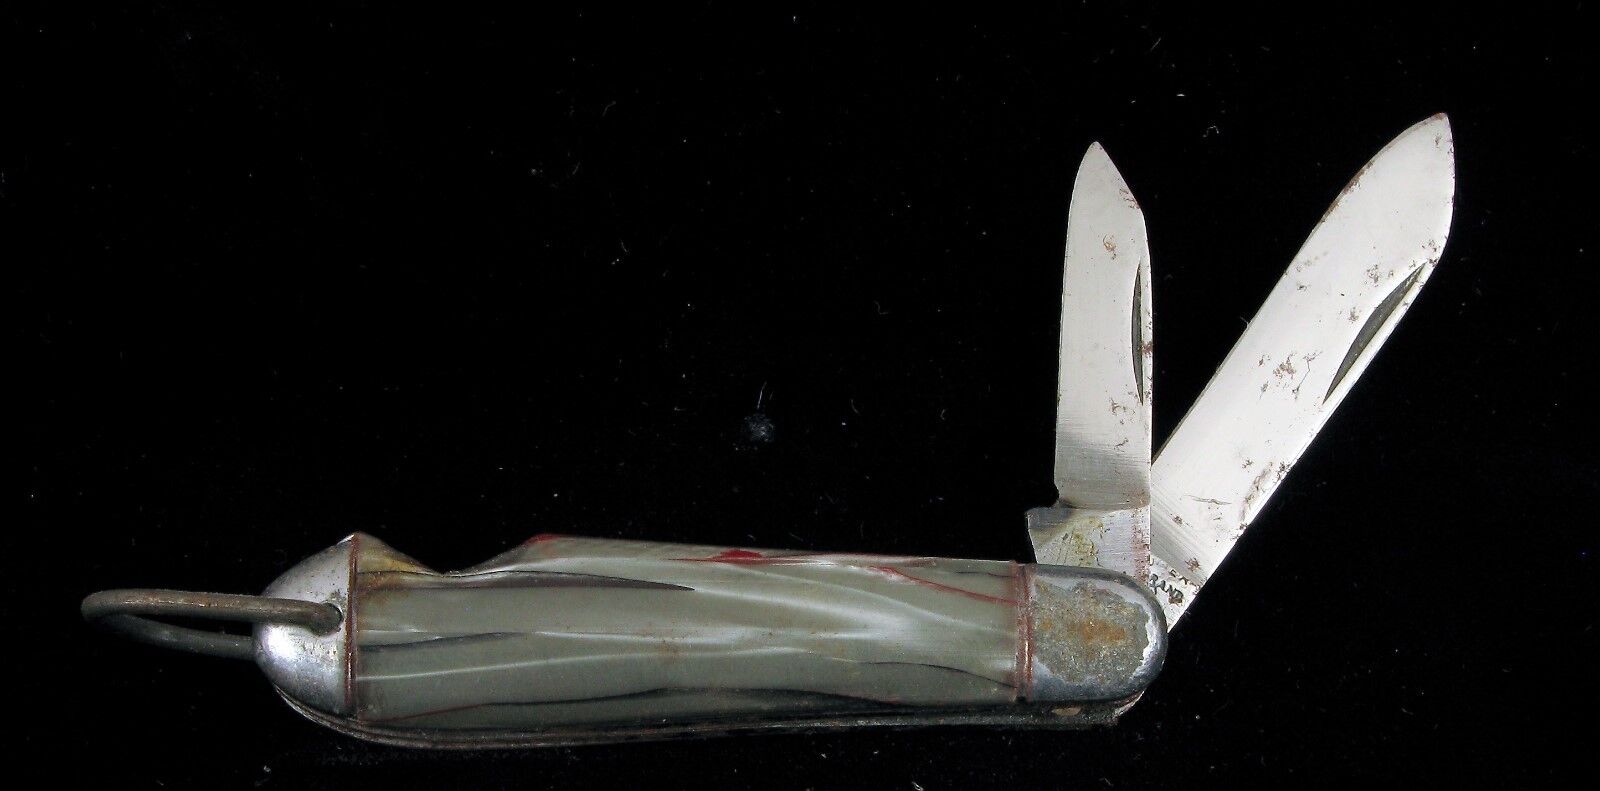 ANTIQUE NOS SUPER CLEAN HAMMER BRAND POCKET KNIFE 1938 - 1941 UTILITY FOLDING 